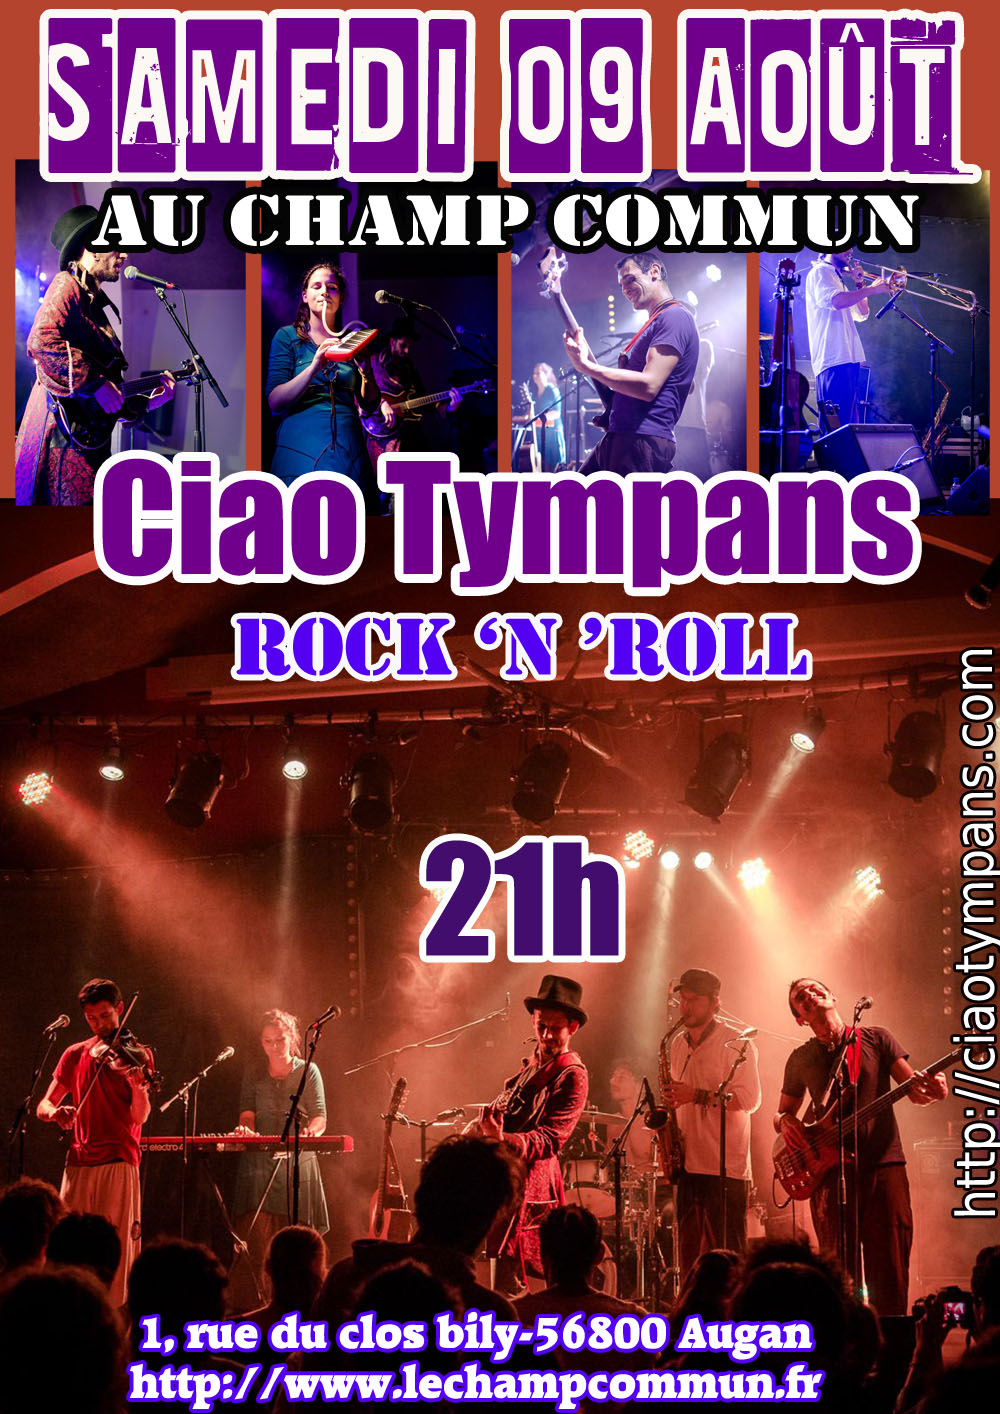 Samedi 09 Août à 21h au Champ Commun- Ska rock avec Ciao Tympans